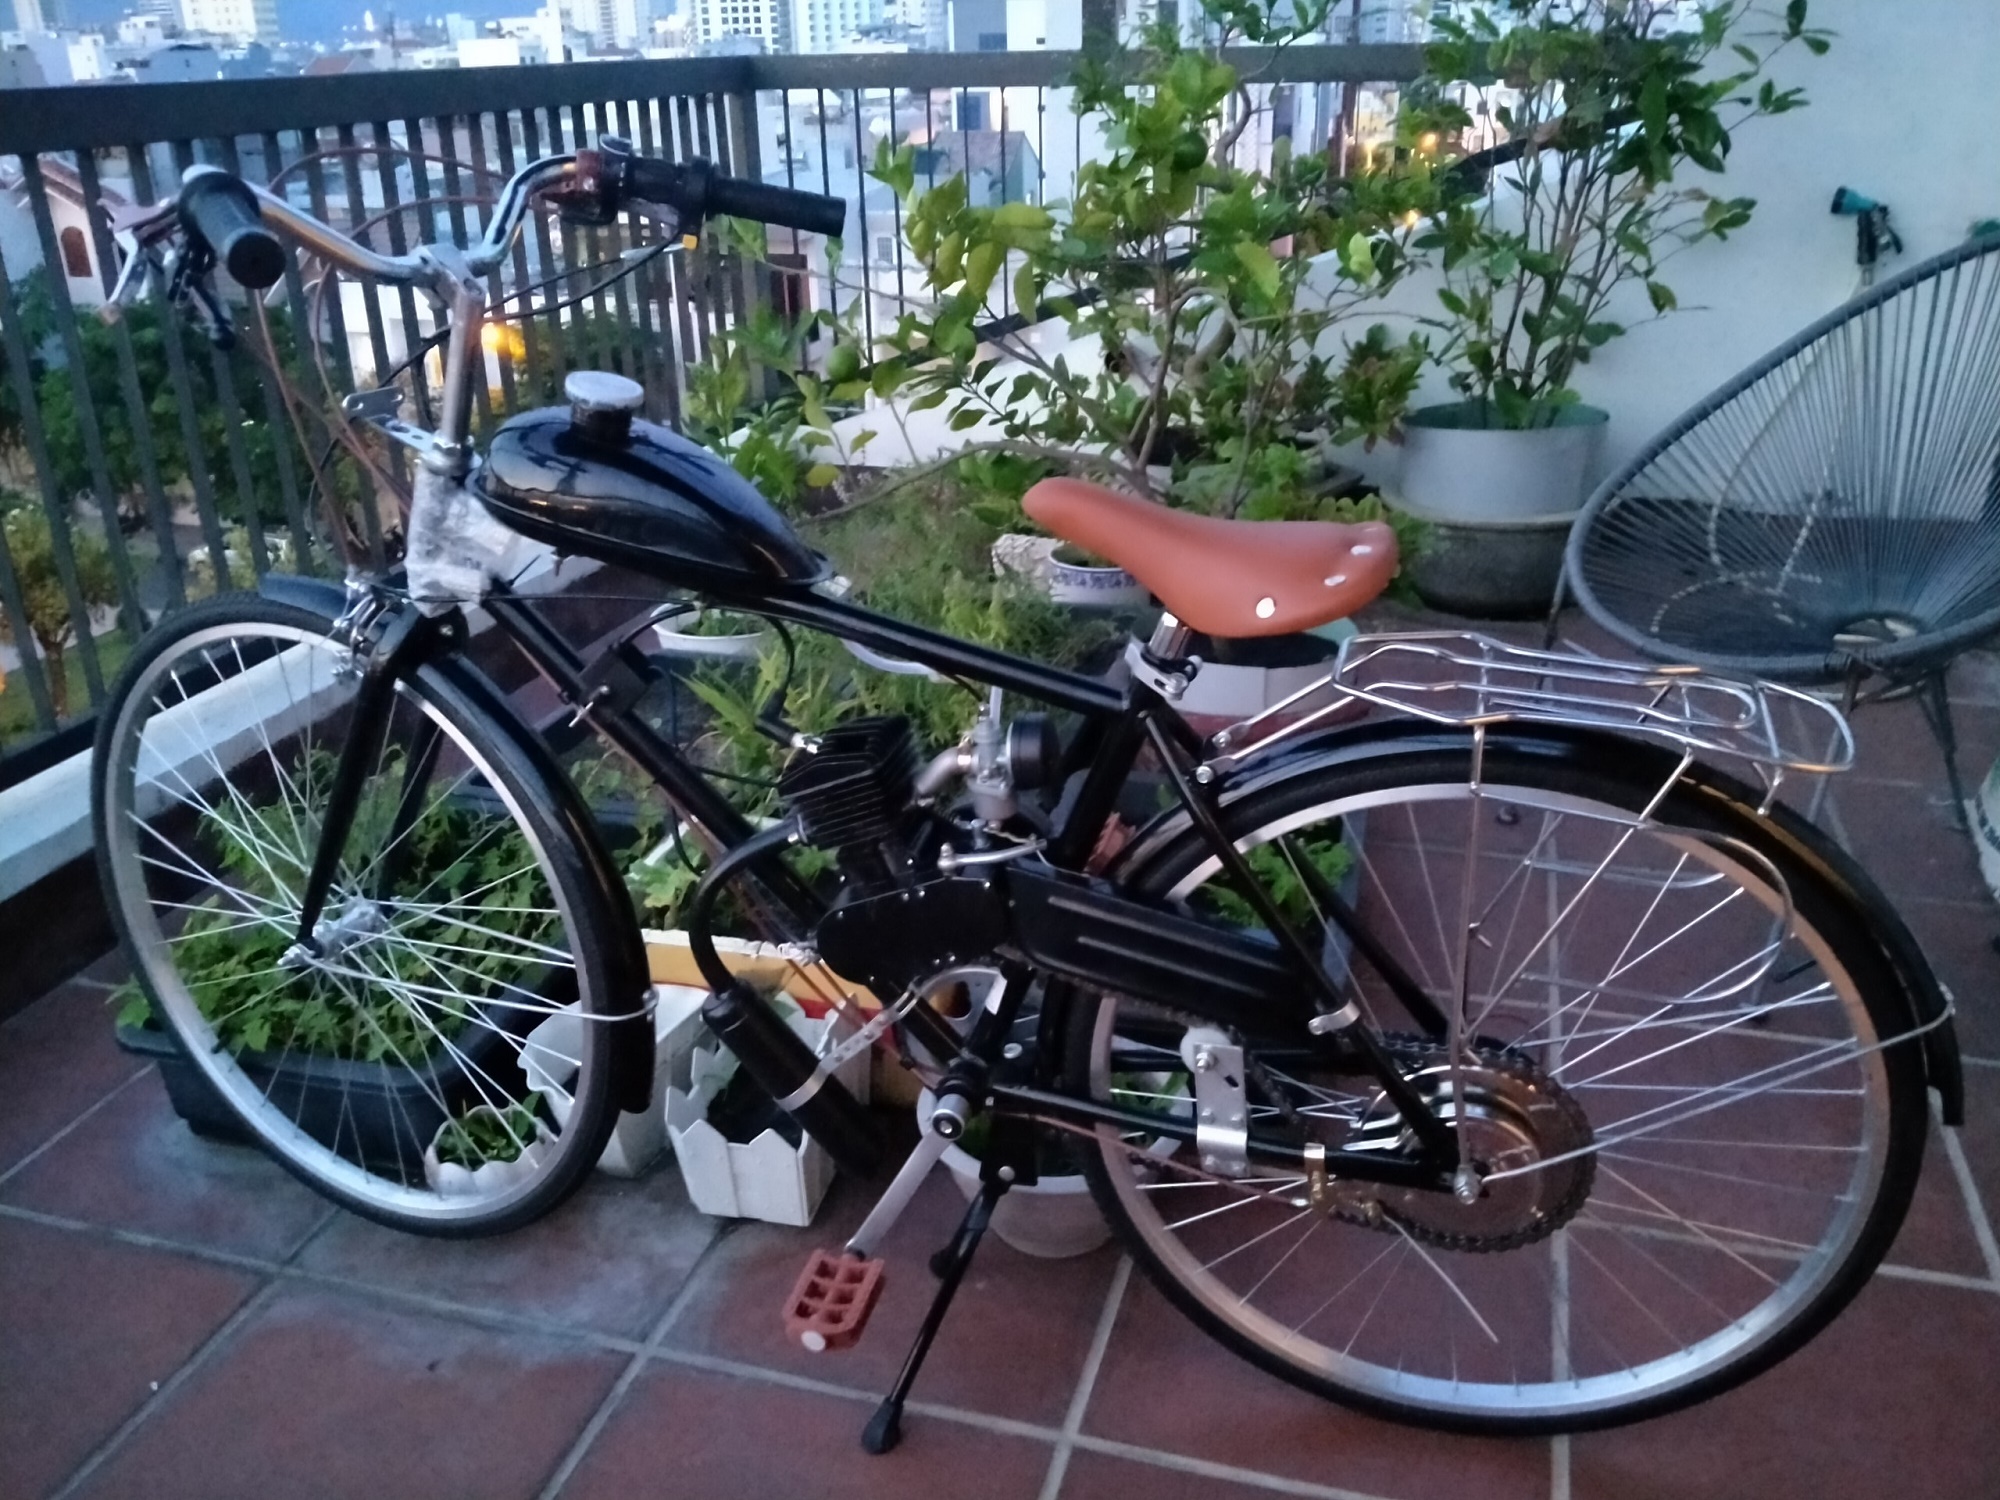 Xe đạp máy Peugeot 104 cũ 44 năm tuổi giá 200 triệu đồng ở Hà Nội